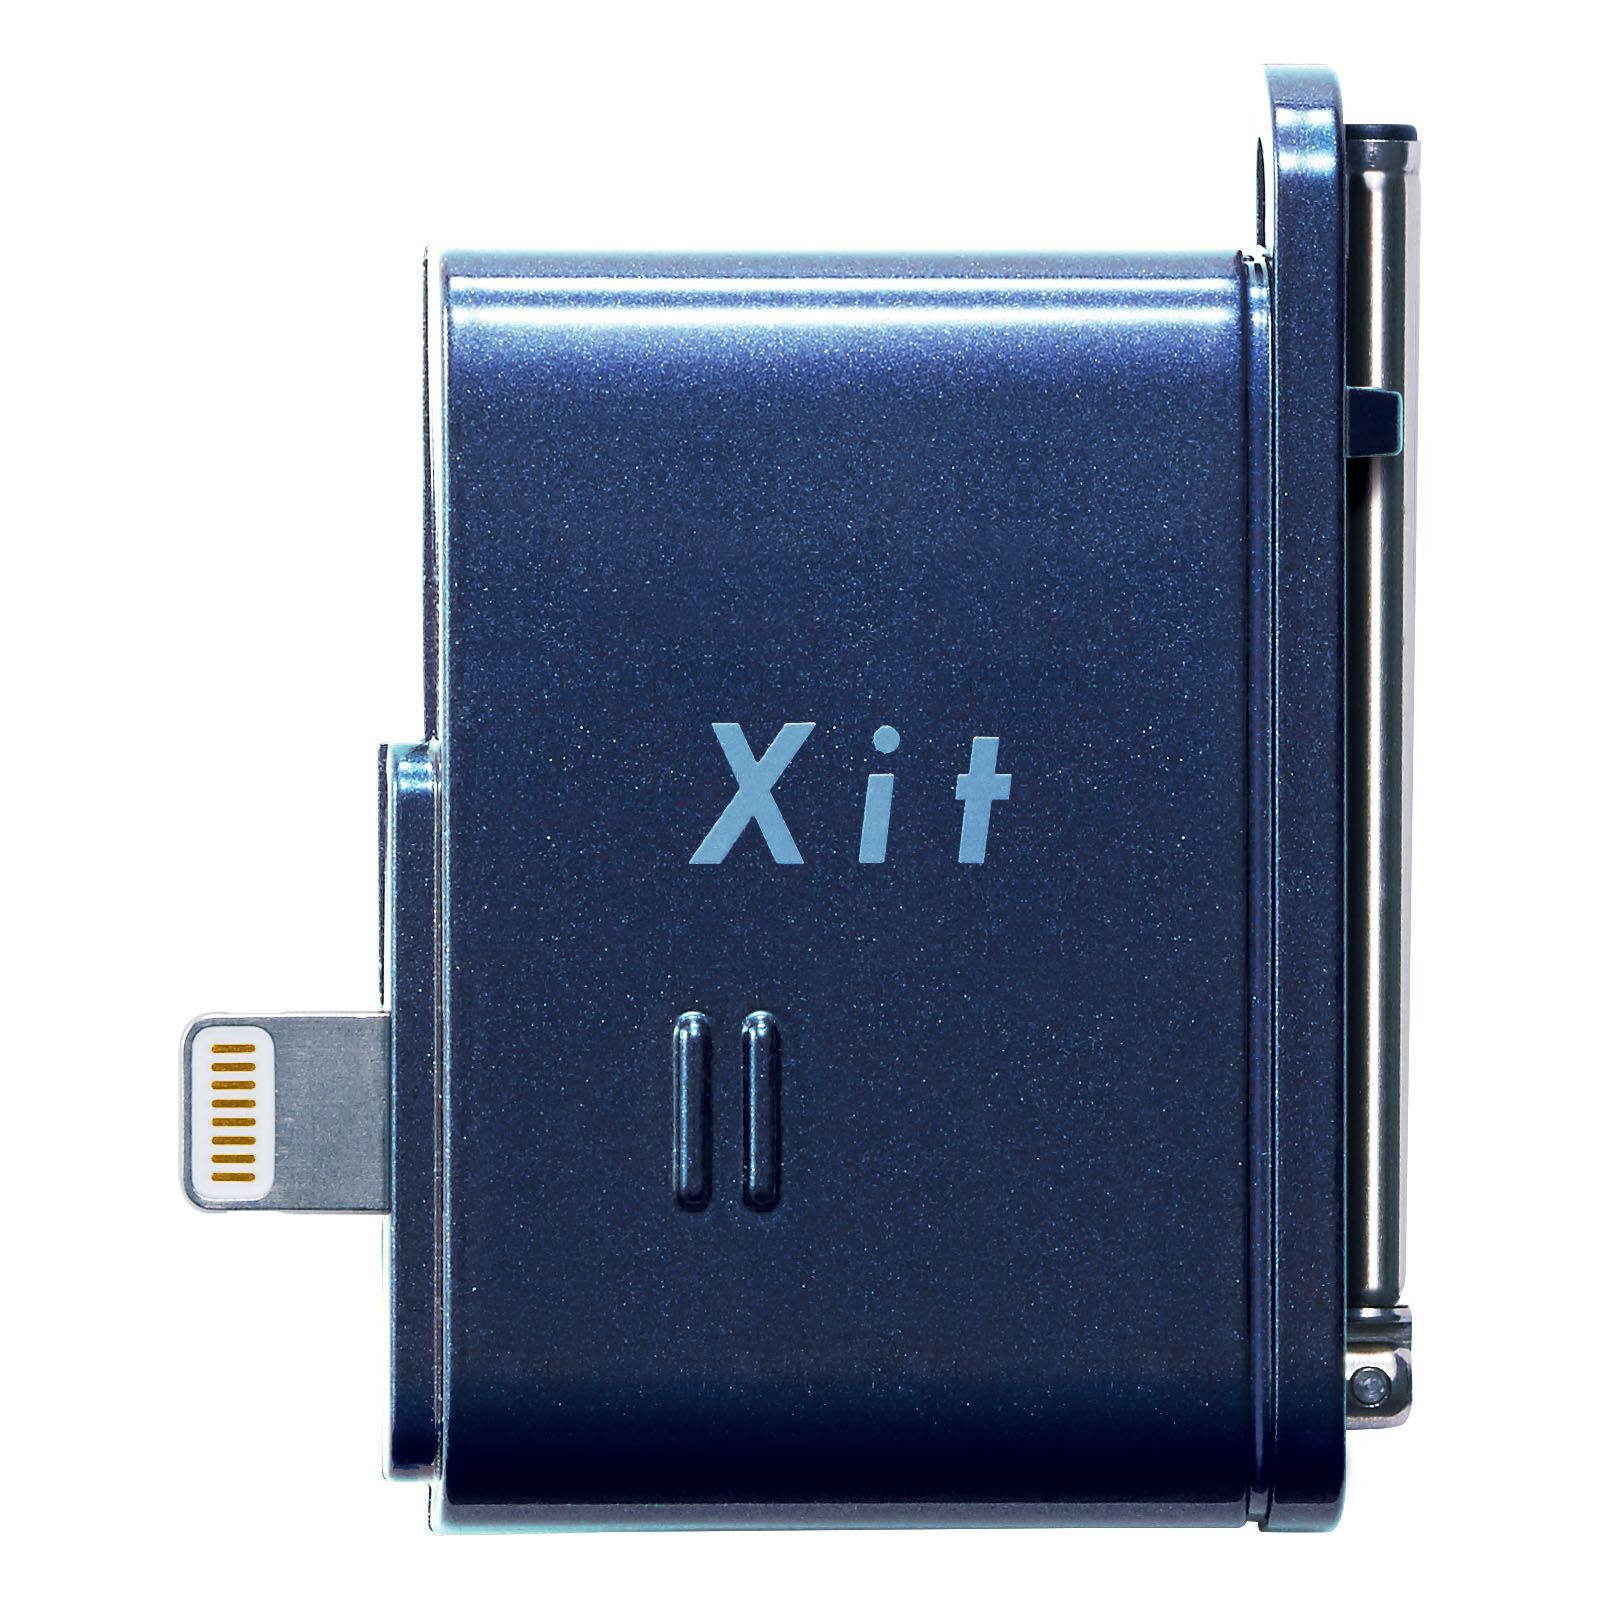 テレビチューナー向け新ブランド「Xit(サイト)」第2弾 Xit Stick「XIT ...